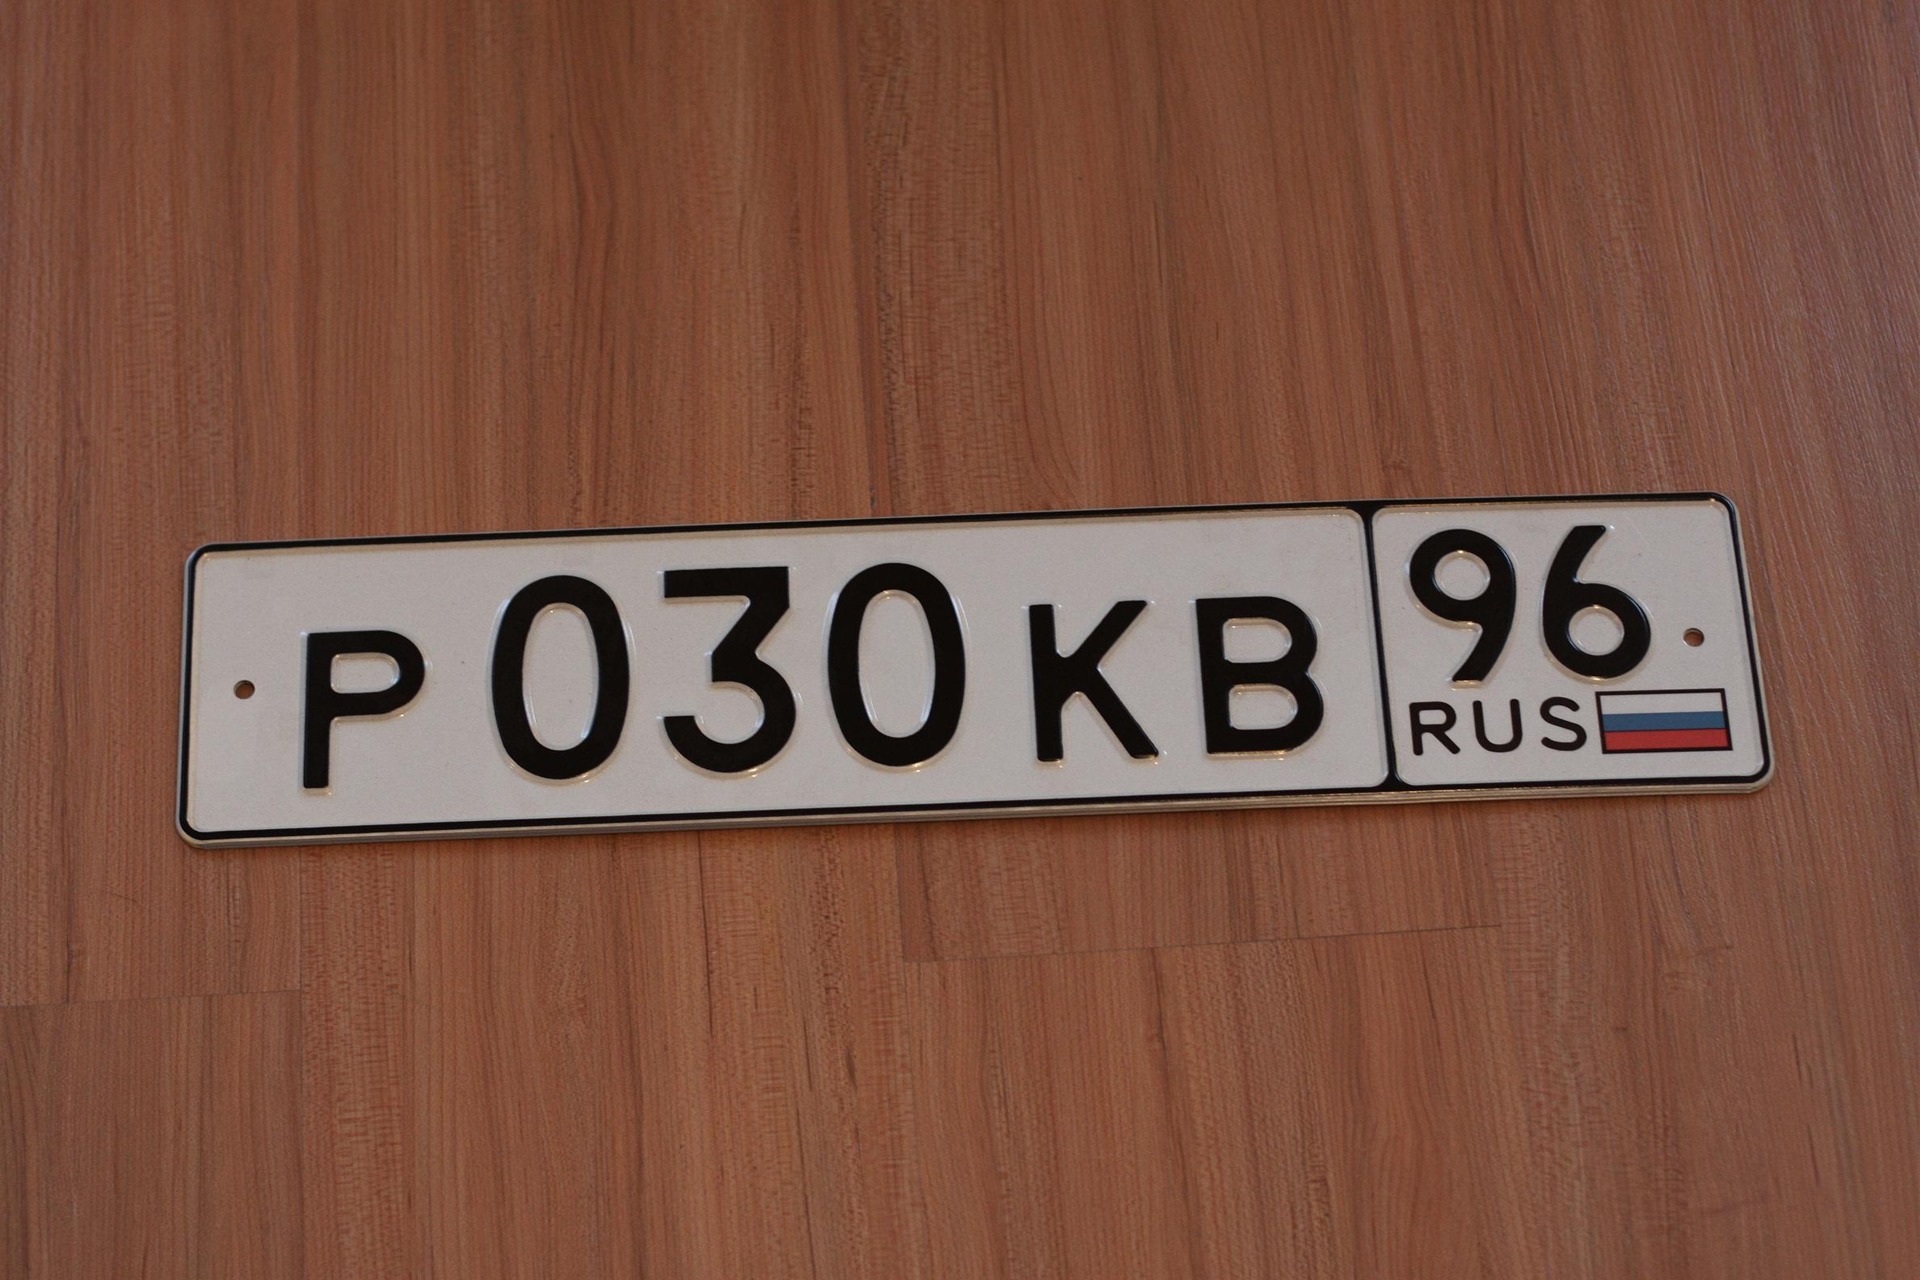 Сайт с бесплатными номерами россии. Номера машин. Гос номер. Госномер автомобиля. Российские автомобильные номера.